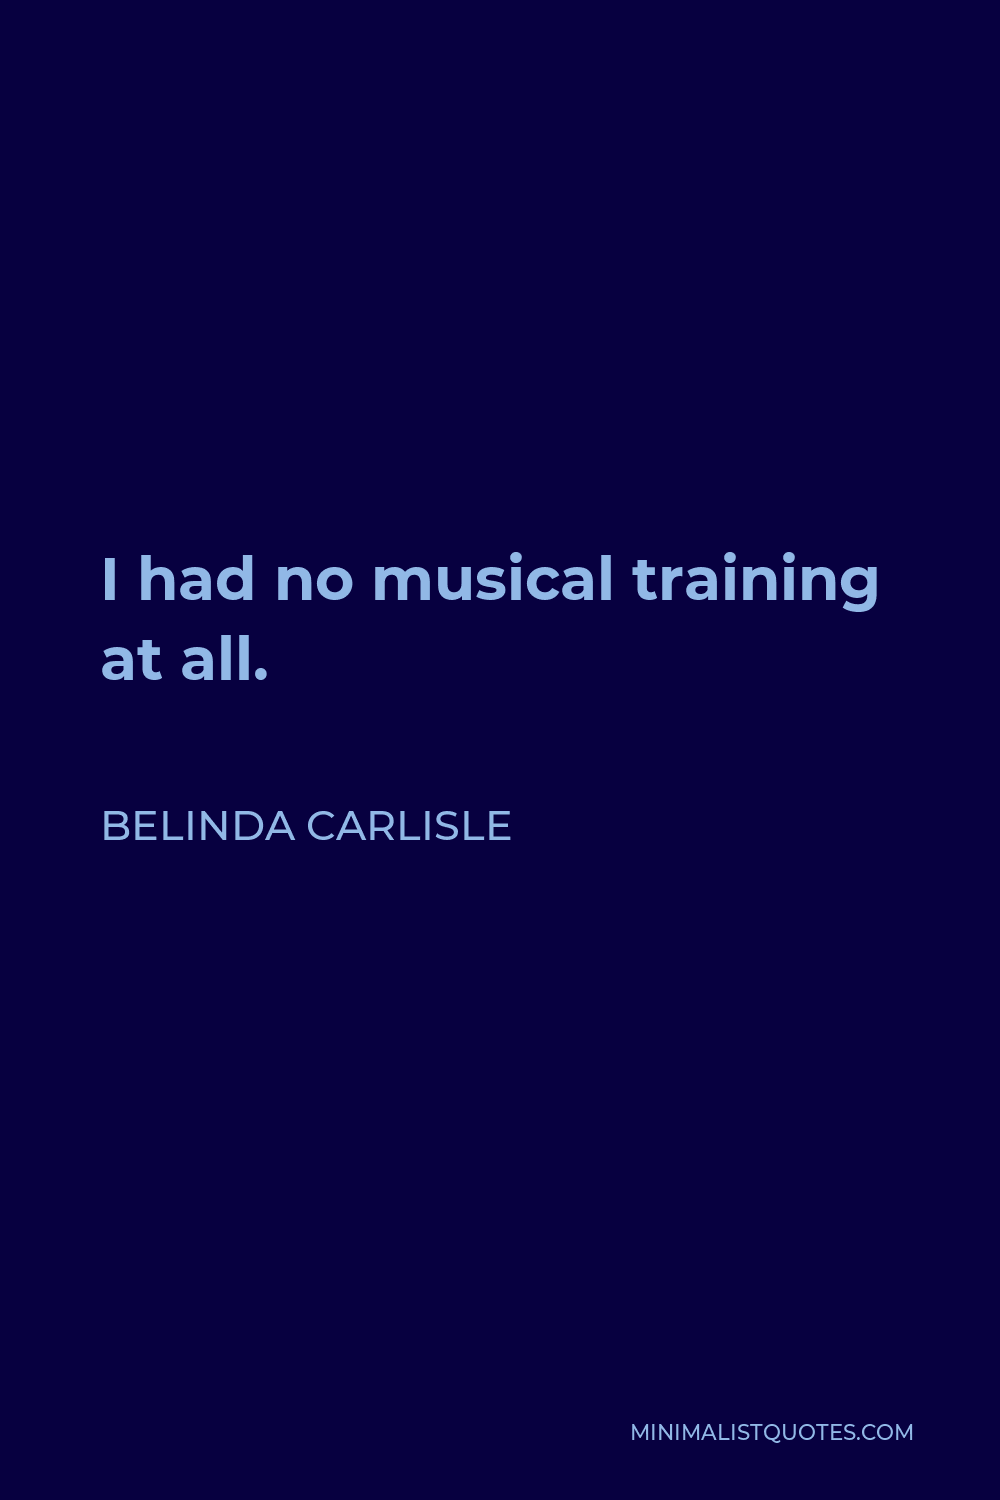 Belinda Carlisle Quote - I had no musical training at all.